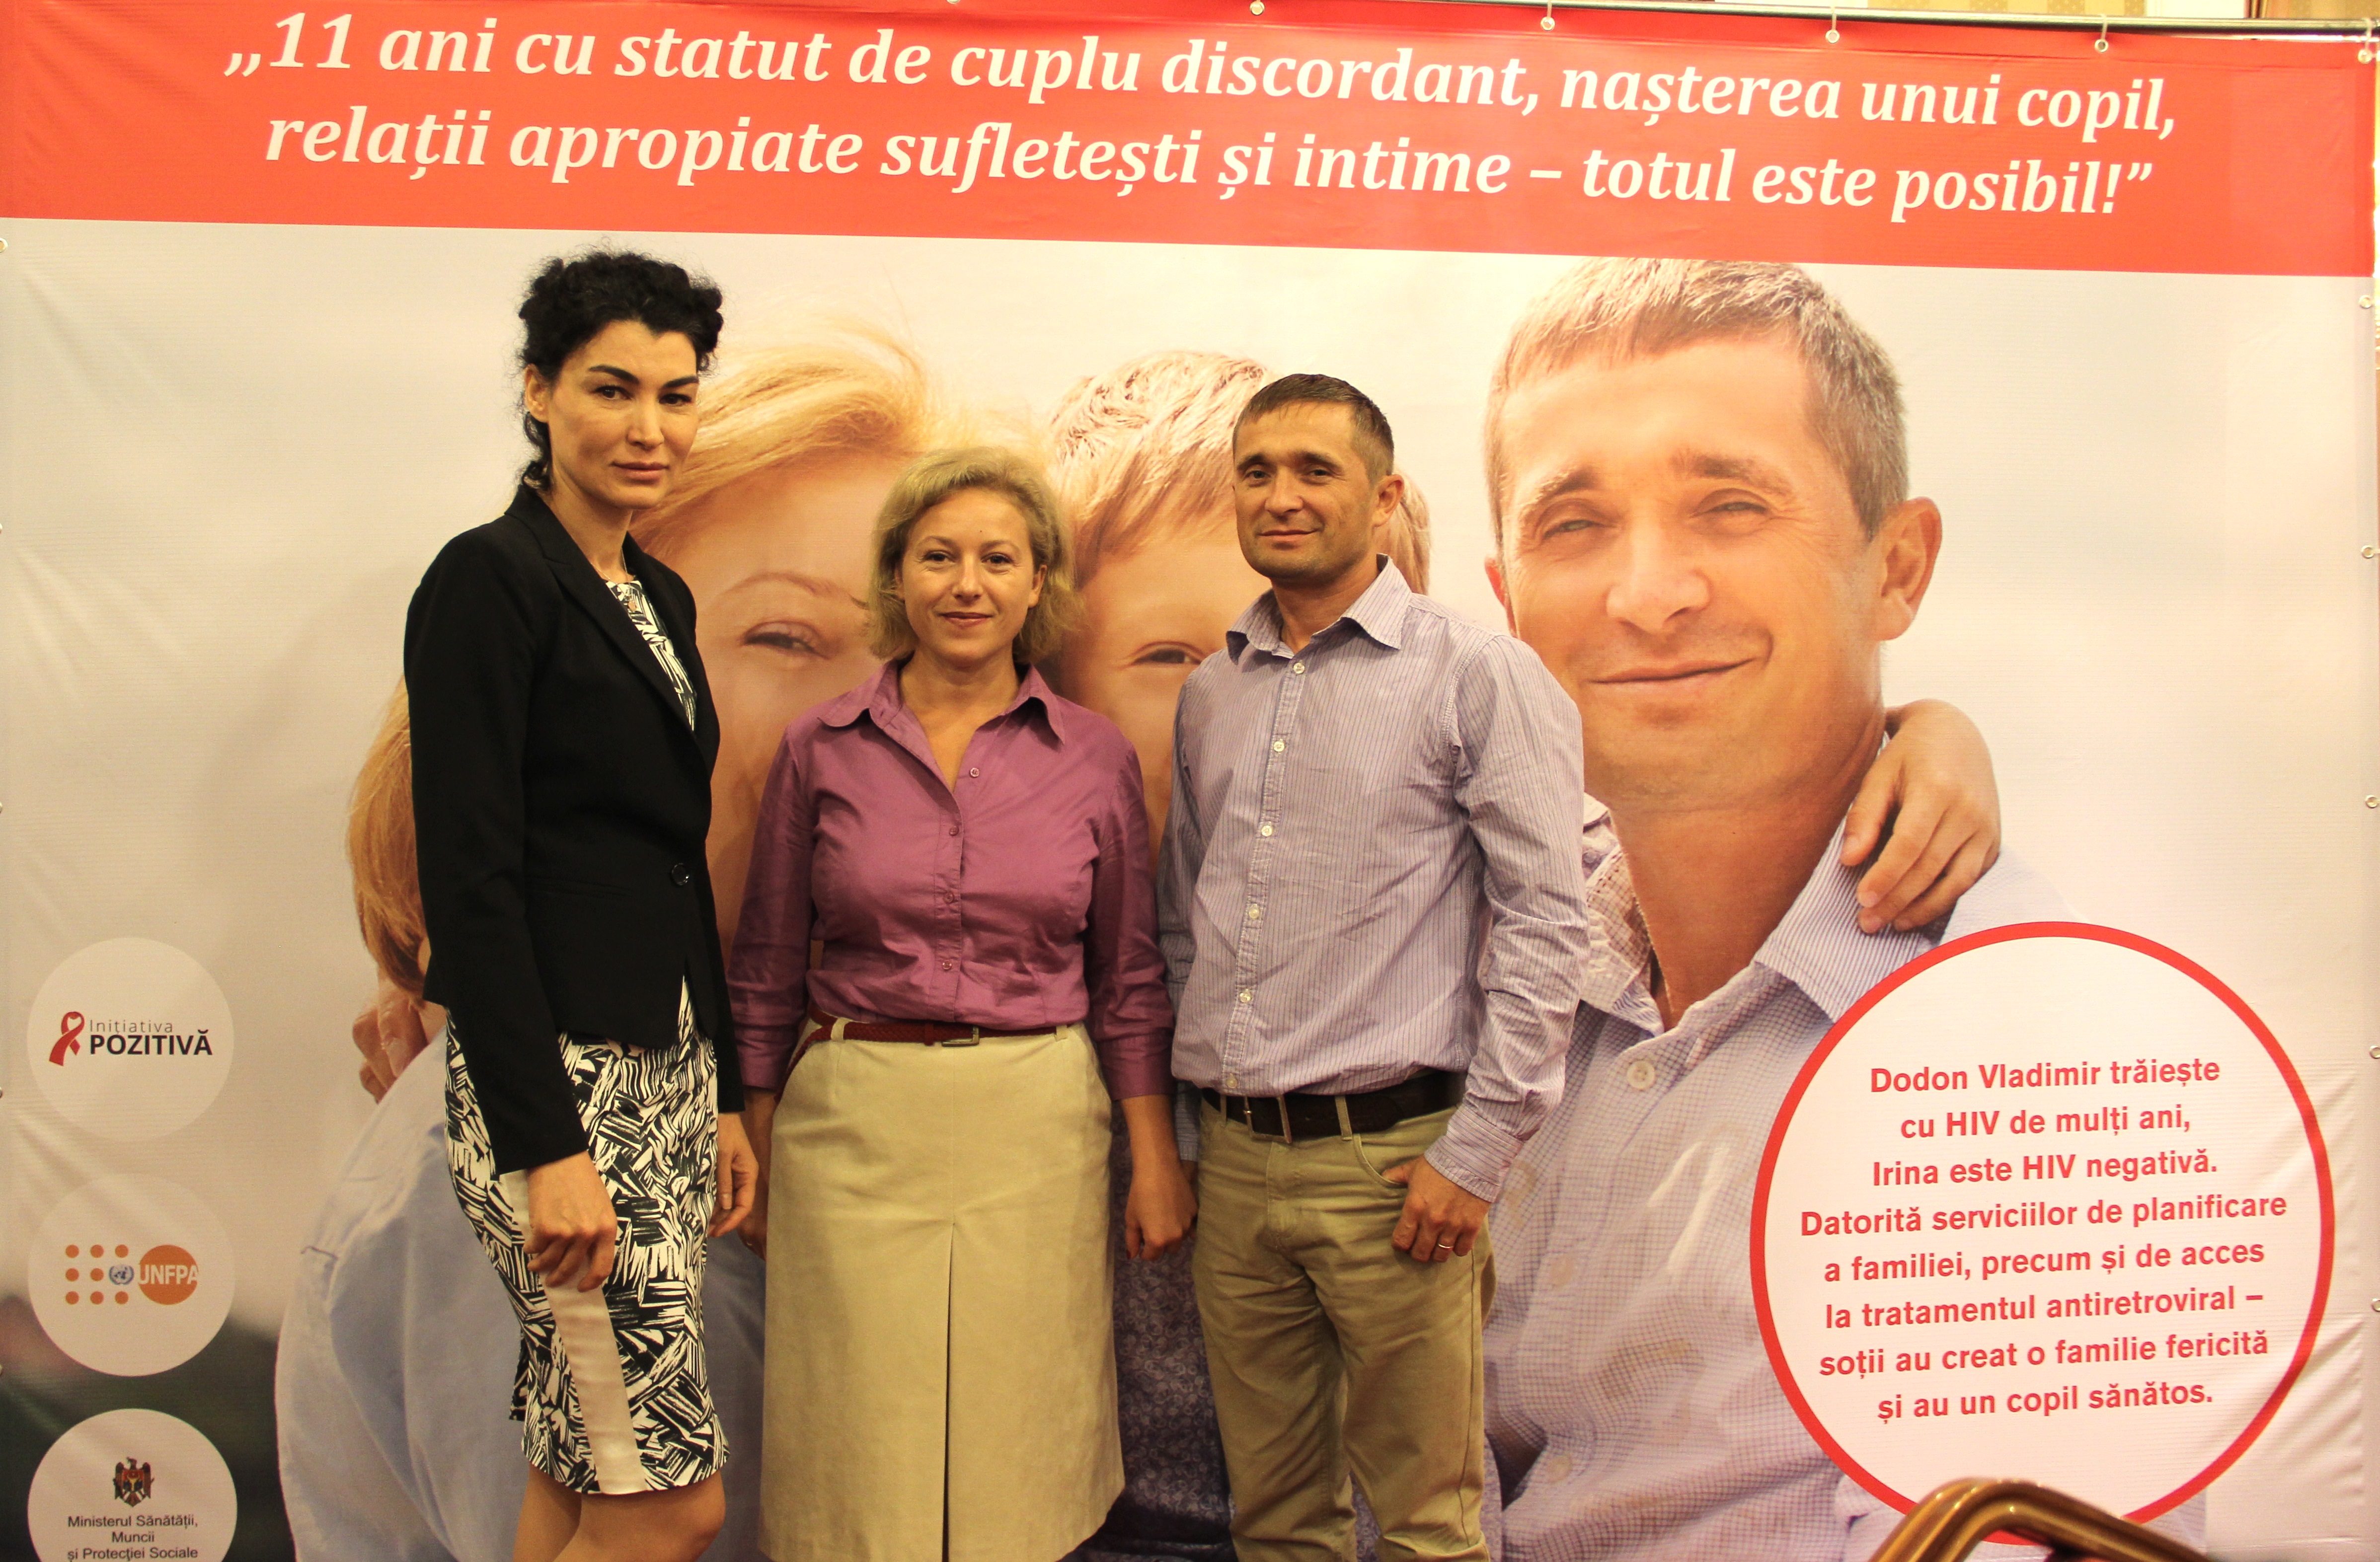 Reprezentanta UNFPA în Moldova împreună cu Irina şi Vladimir Dodon – o familie model